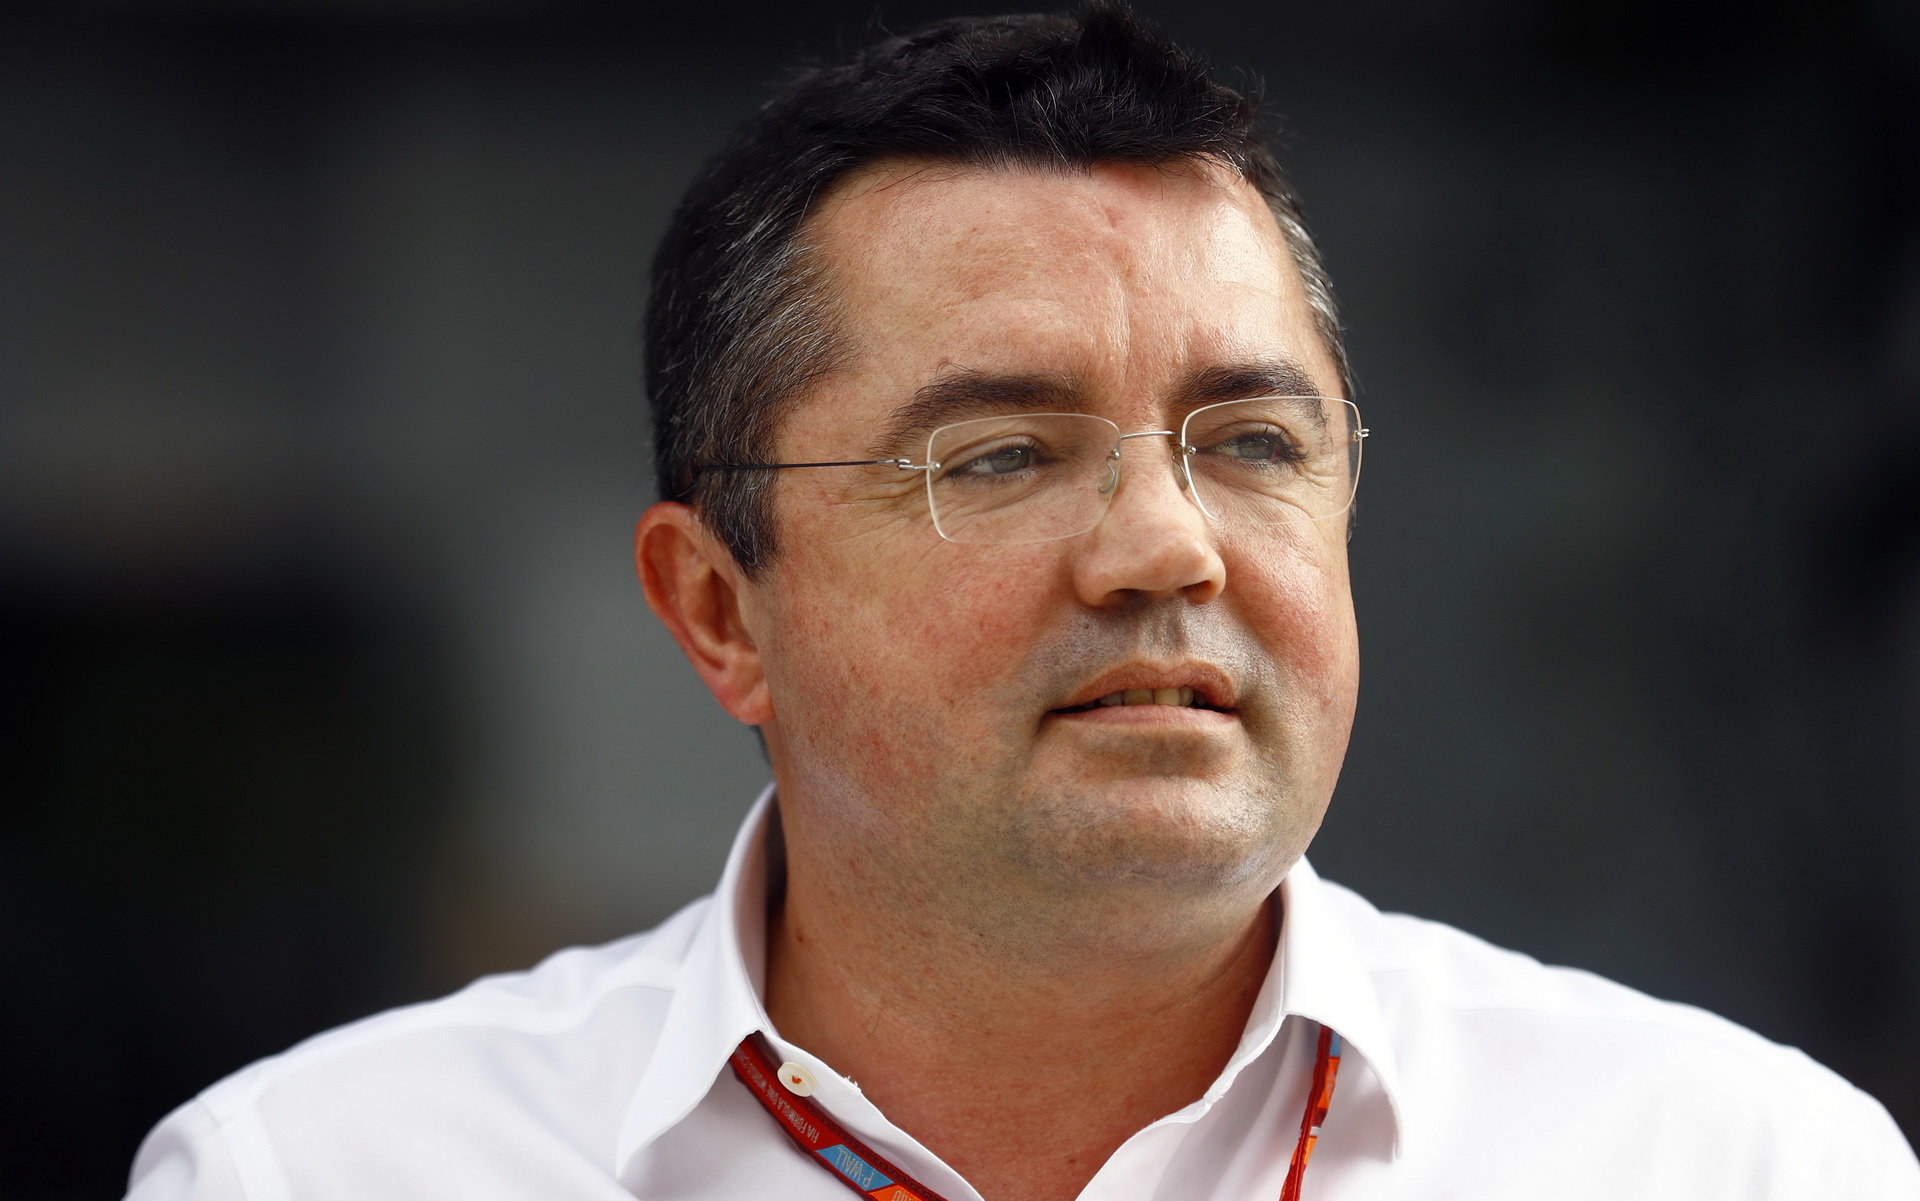 Eric Boullier včera na funkci závodního ředitele McLarenu rezignoval